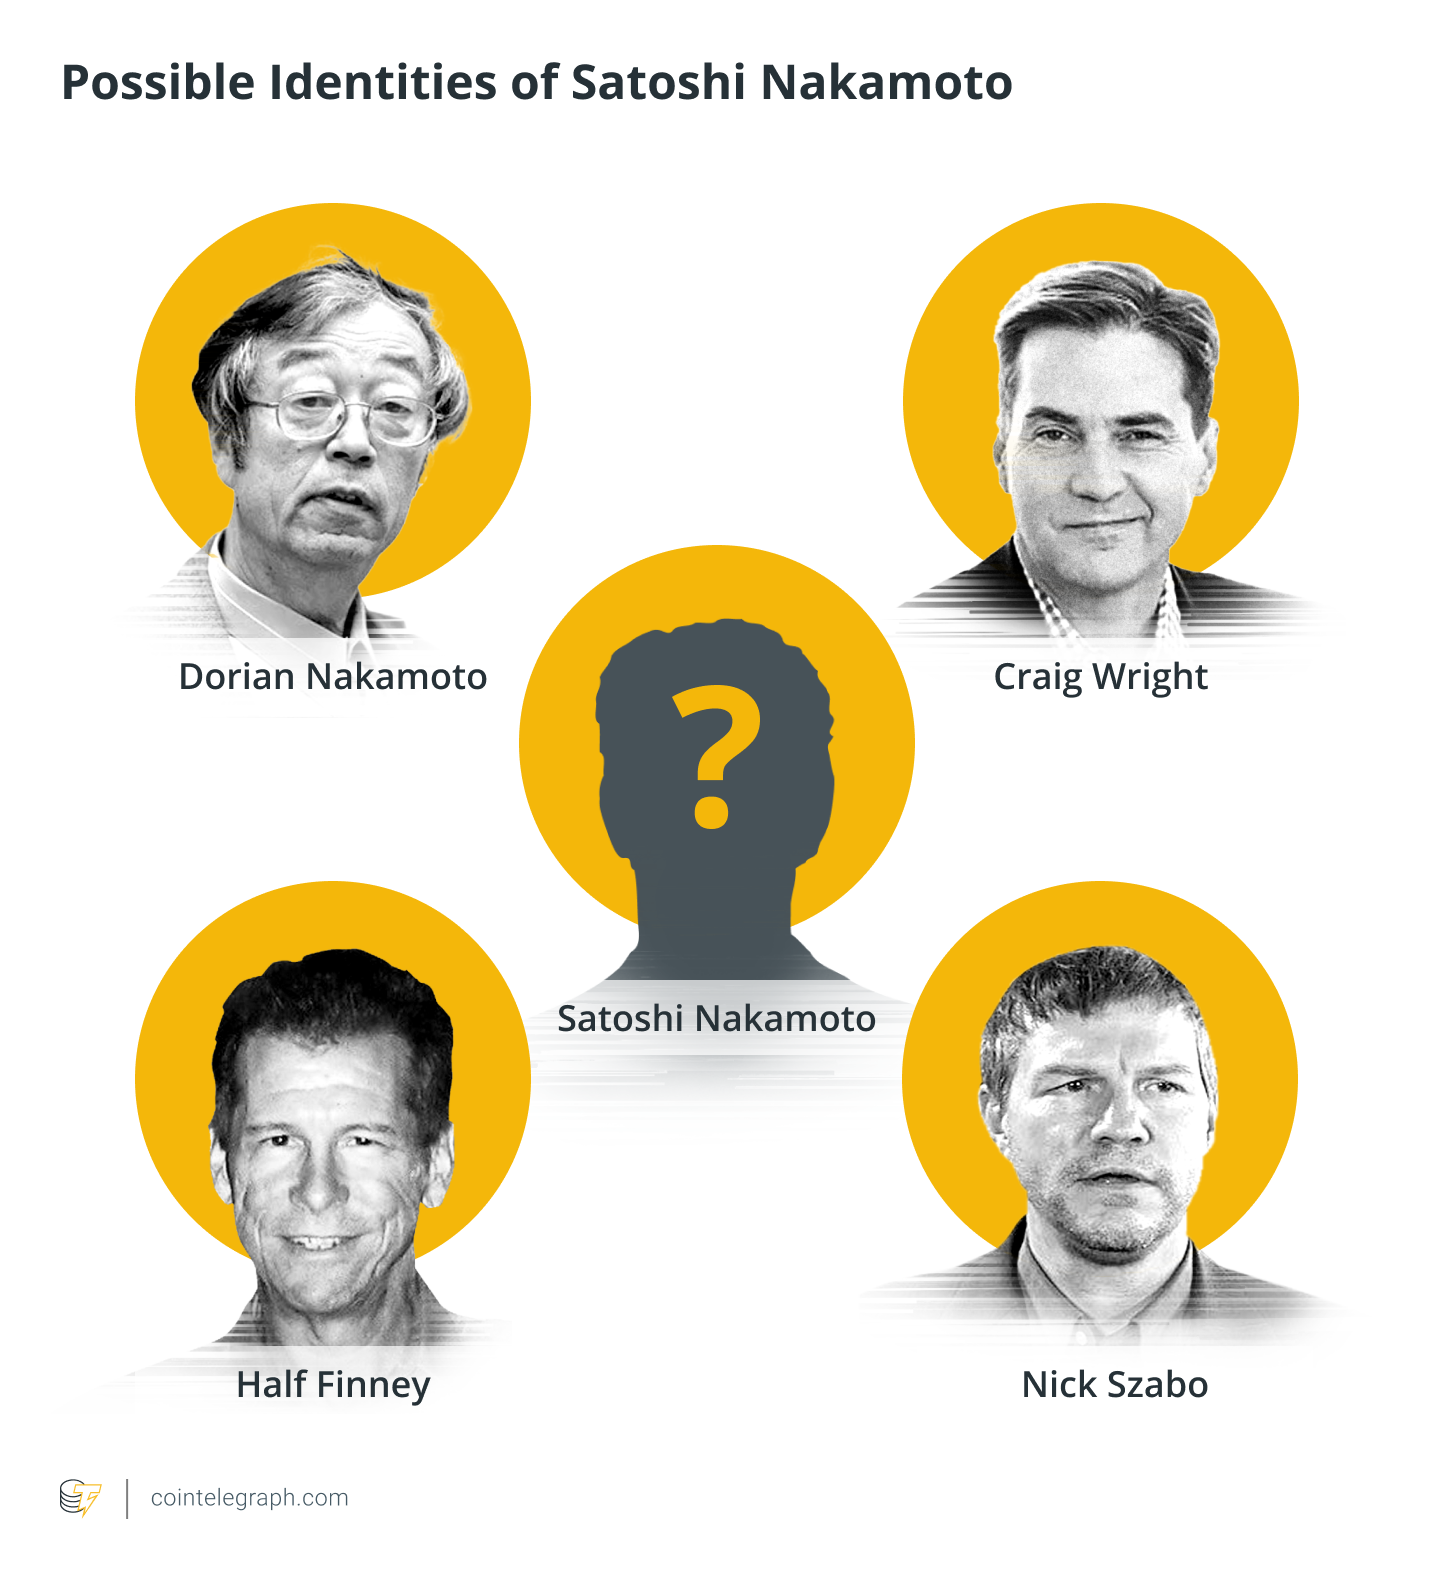 Danh tính thực của Satoshi Nakamoto vẫn là một bí ẩn